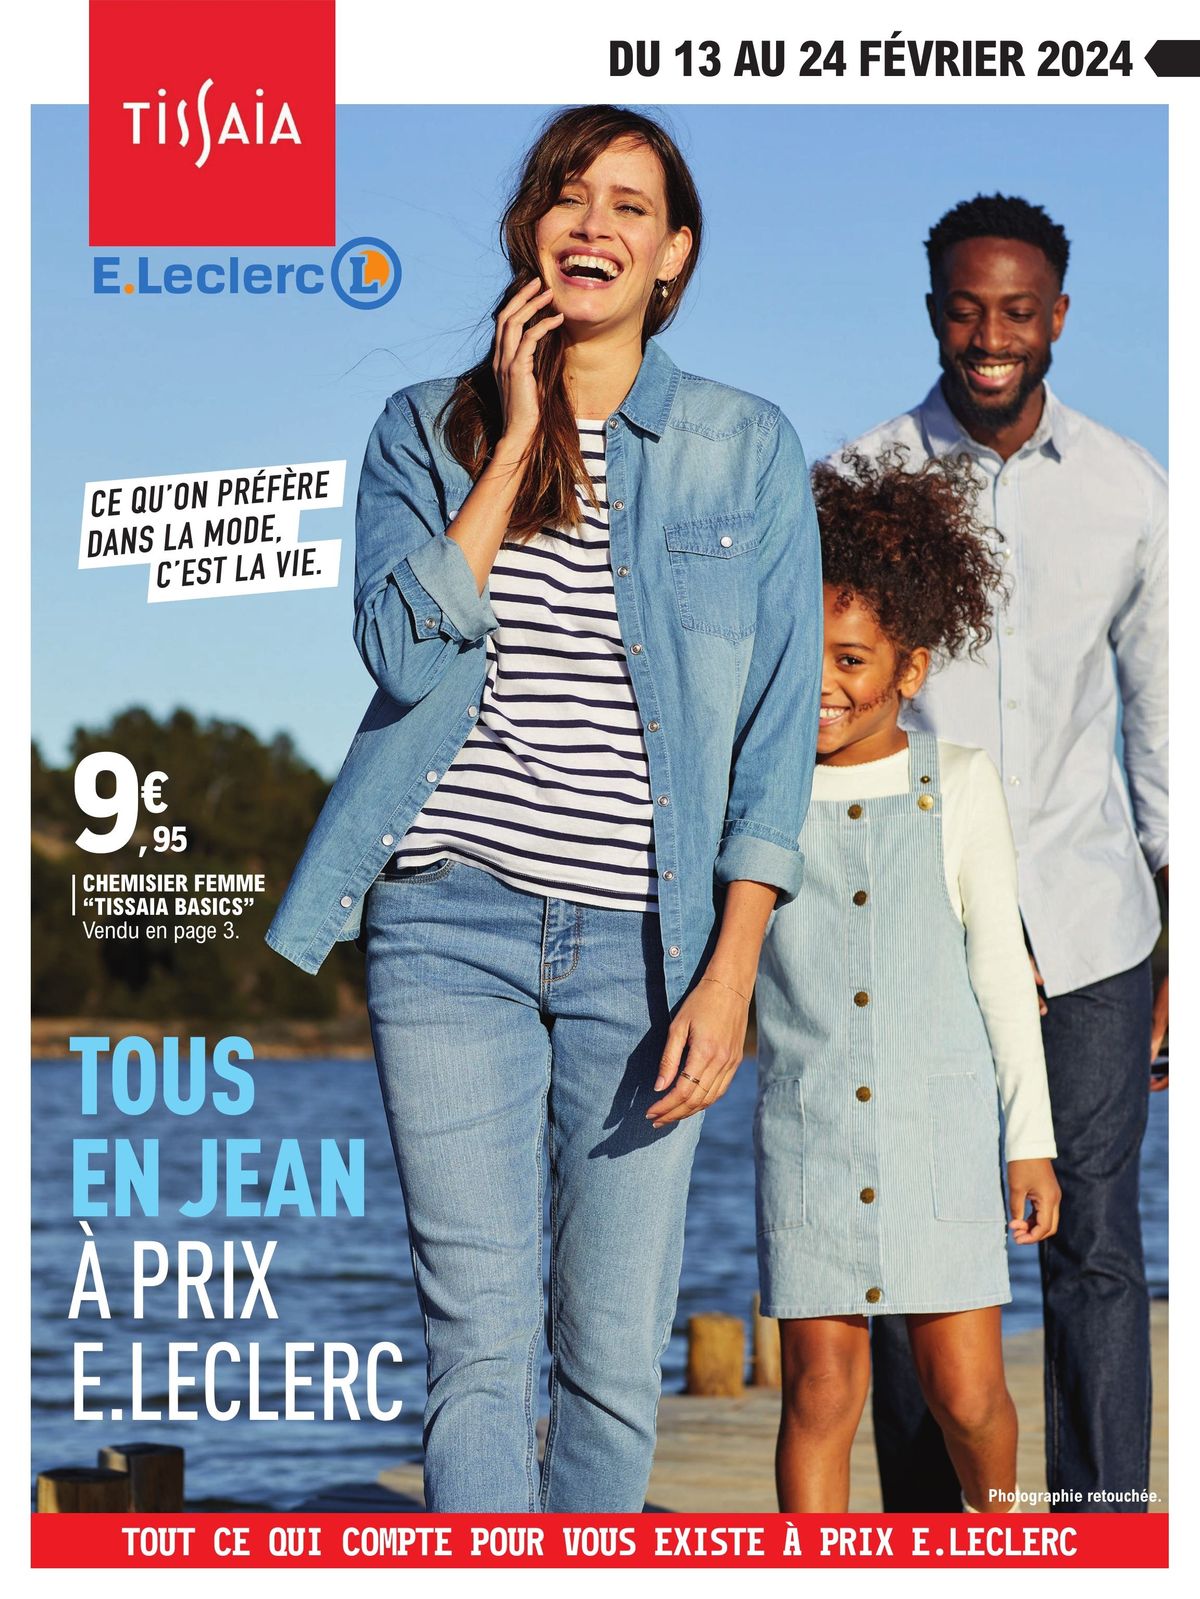 Catalogue Tous en Jeans à prix E.Lelcerc, page 00001